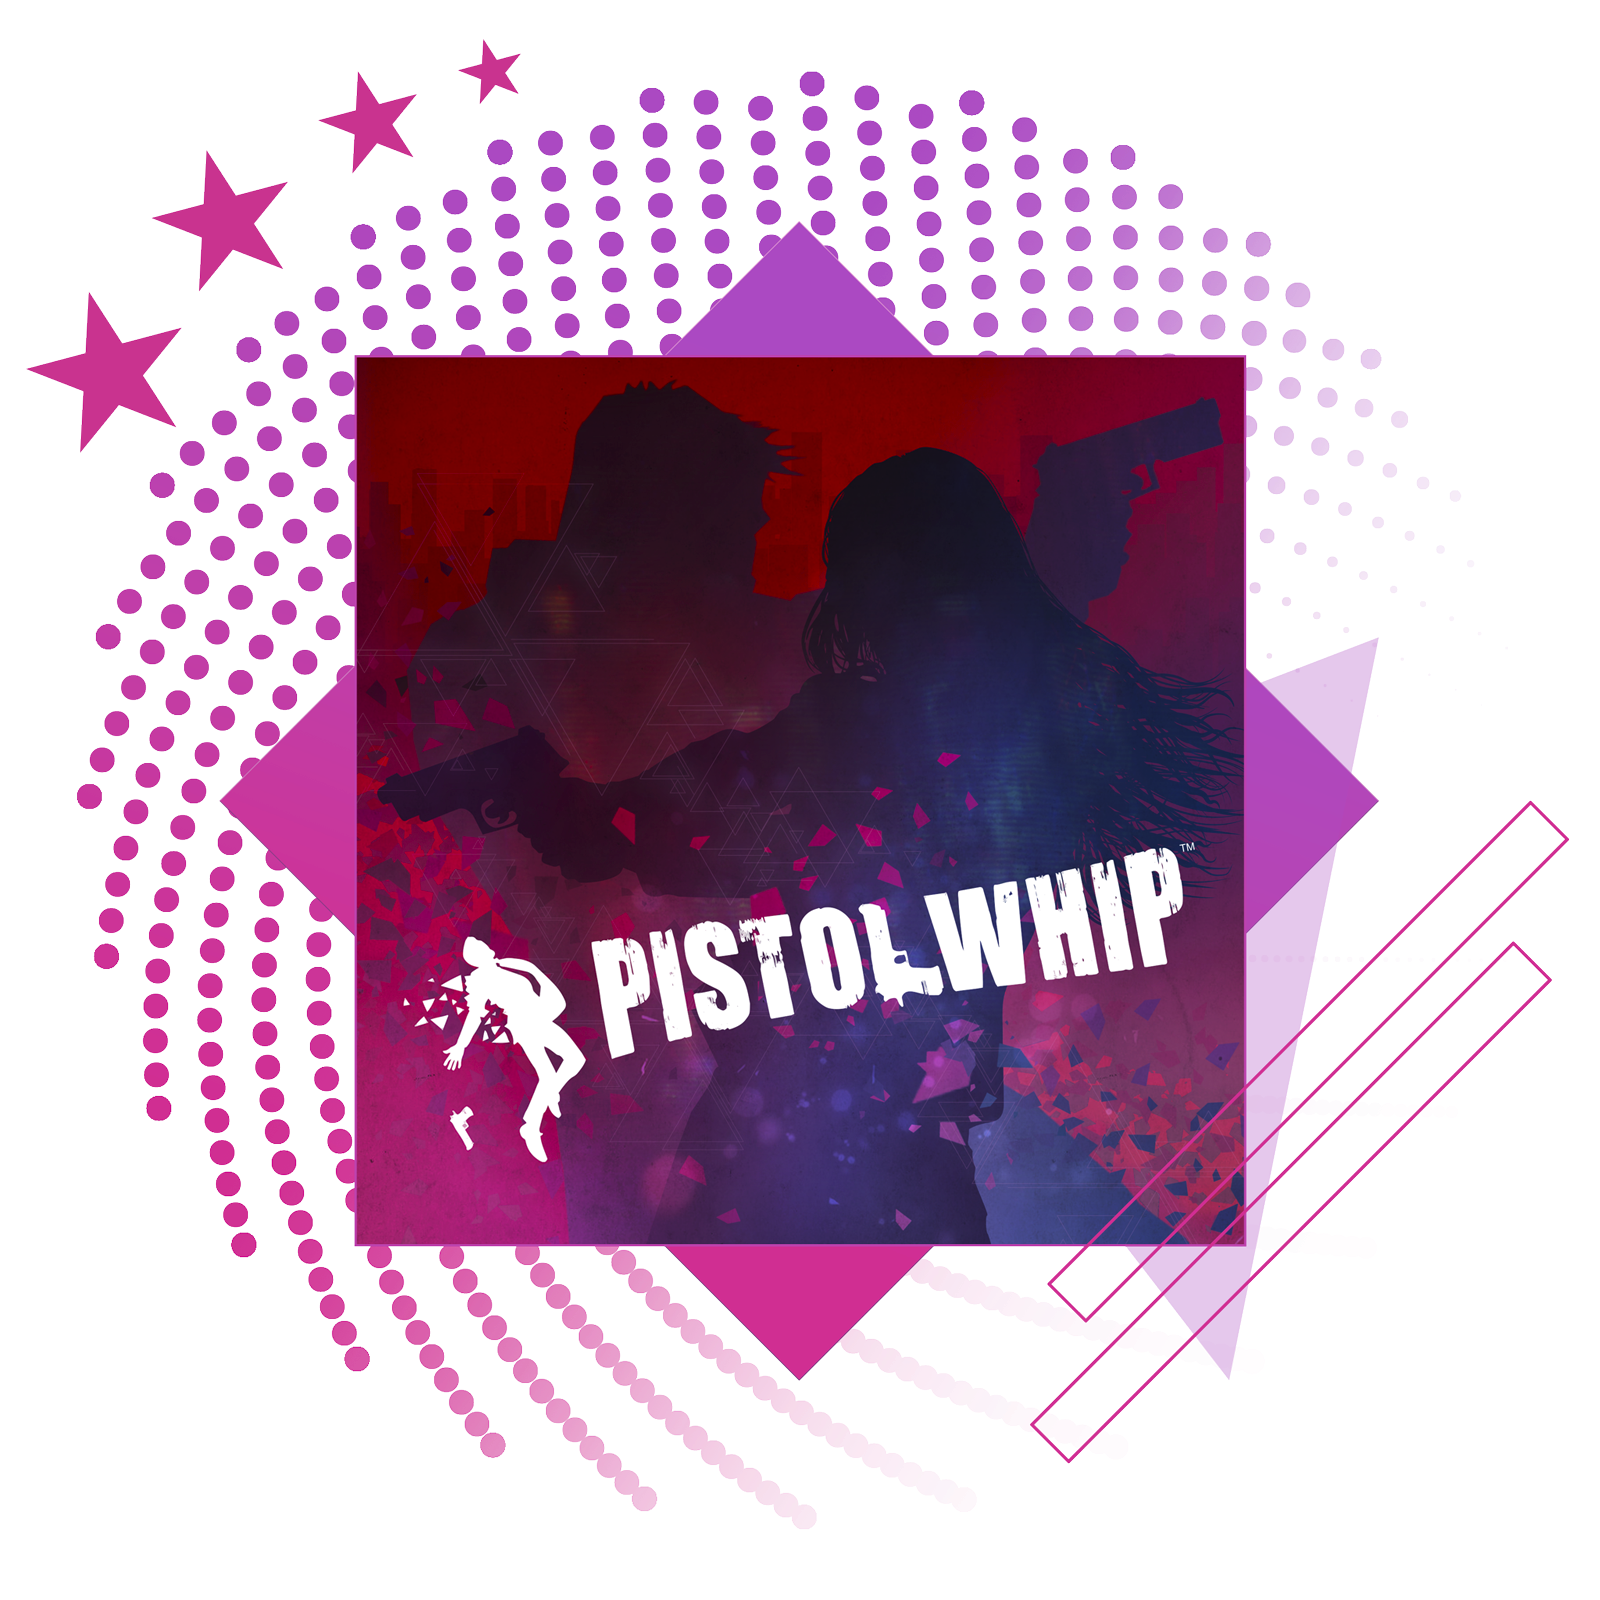 Image de présentation des meilleurs jeux de rythme, avec des illustrations et du gameplay clés de Pistol Whip